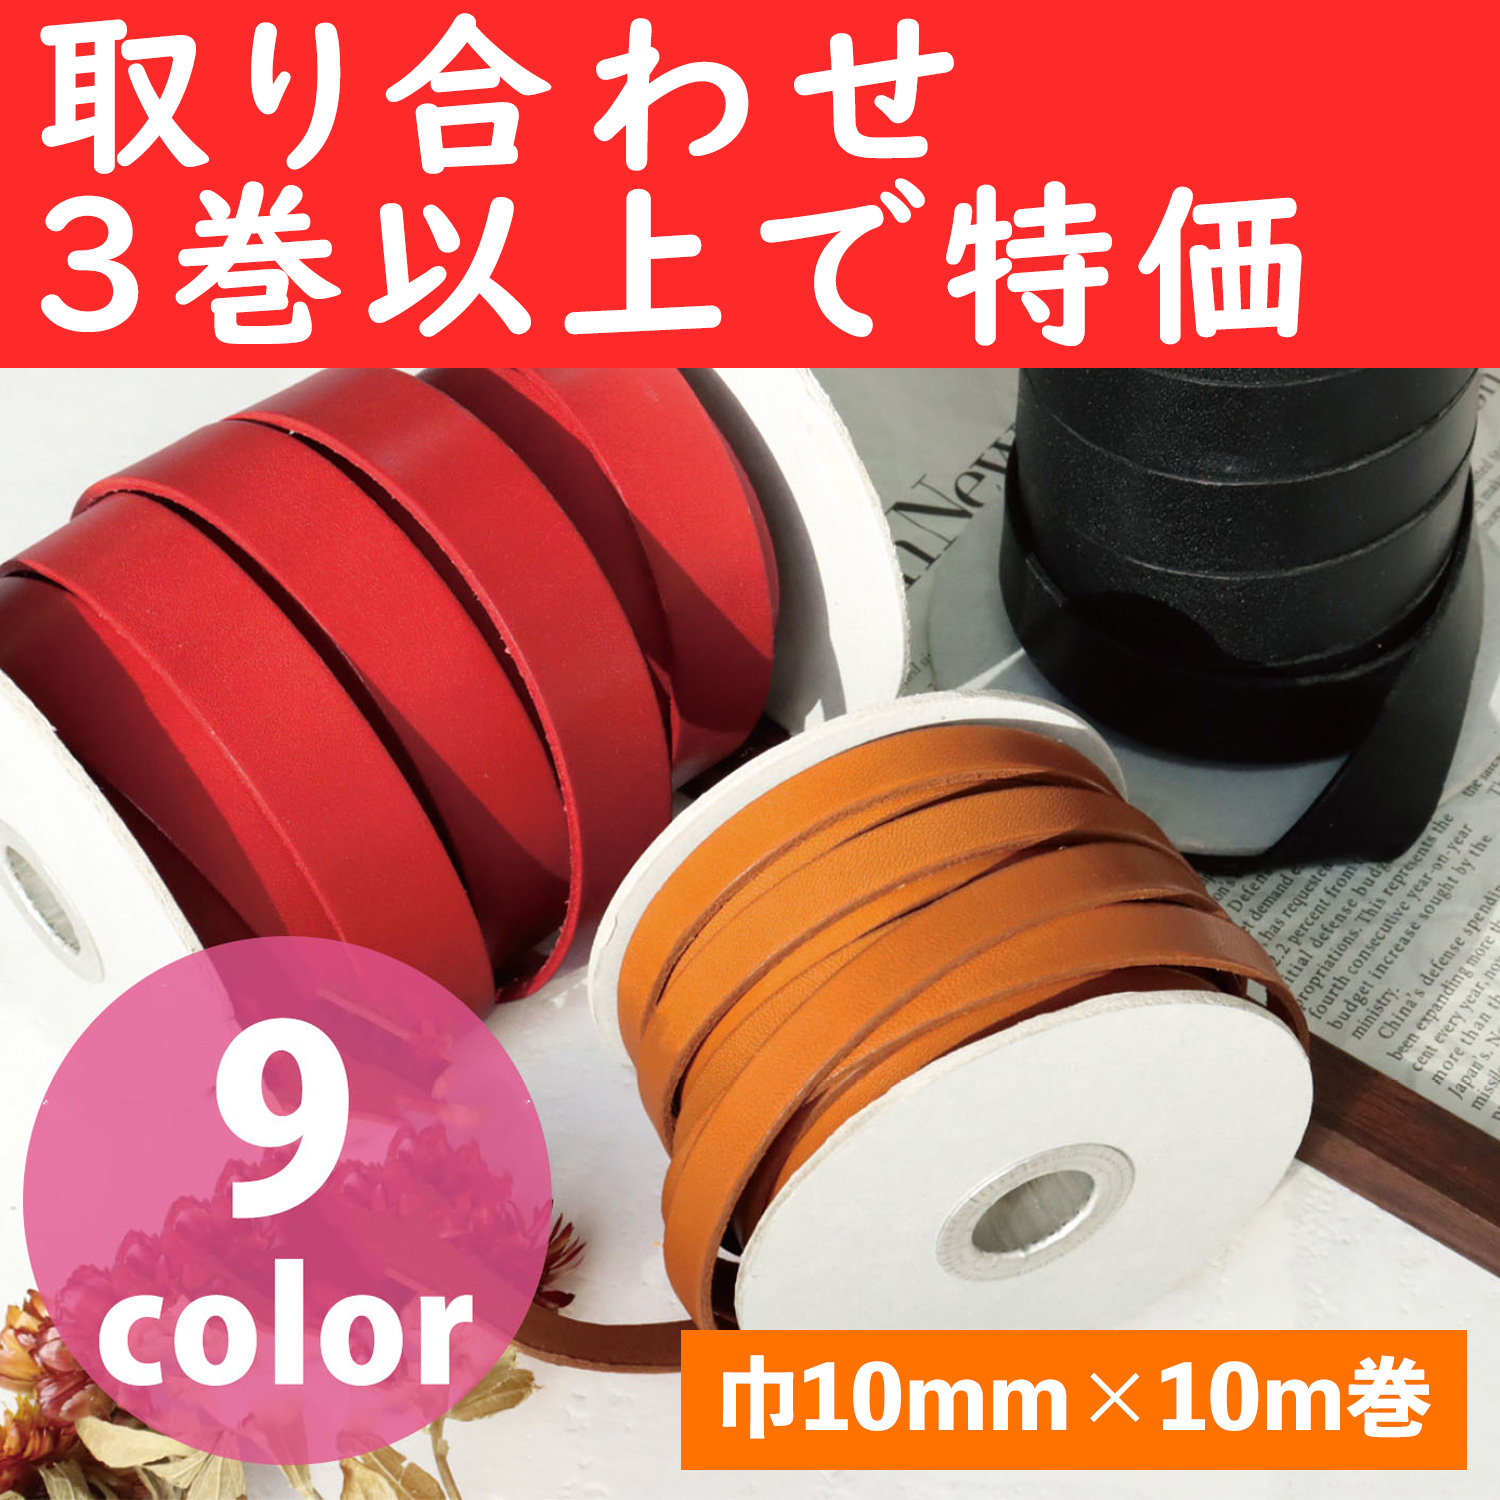 MTLS1010-OVER3 革テープ 巾約10mm×10m巻 色取り合わせ3巻以上 (巻)